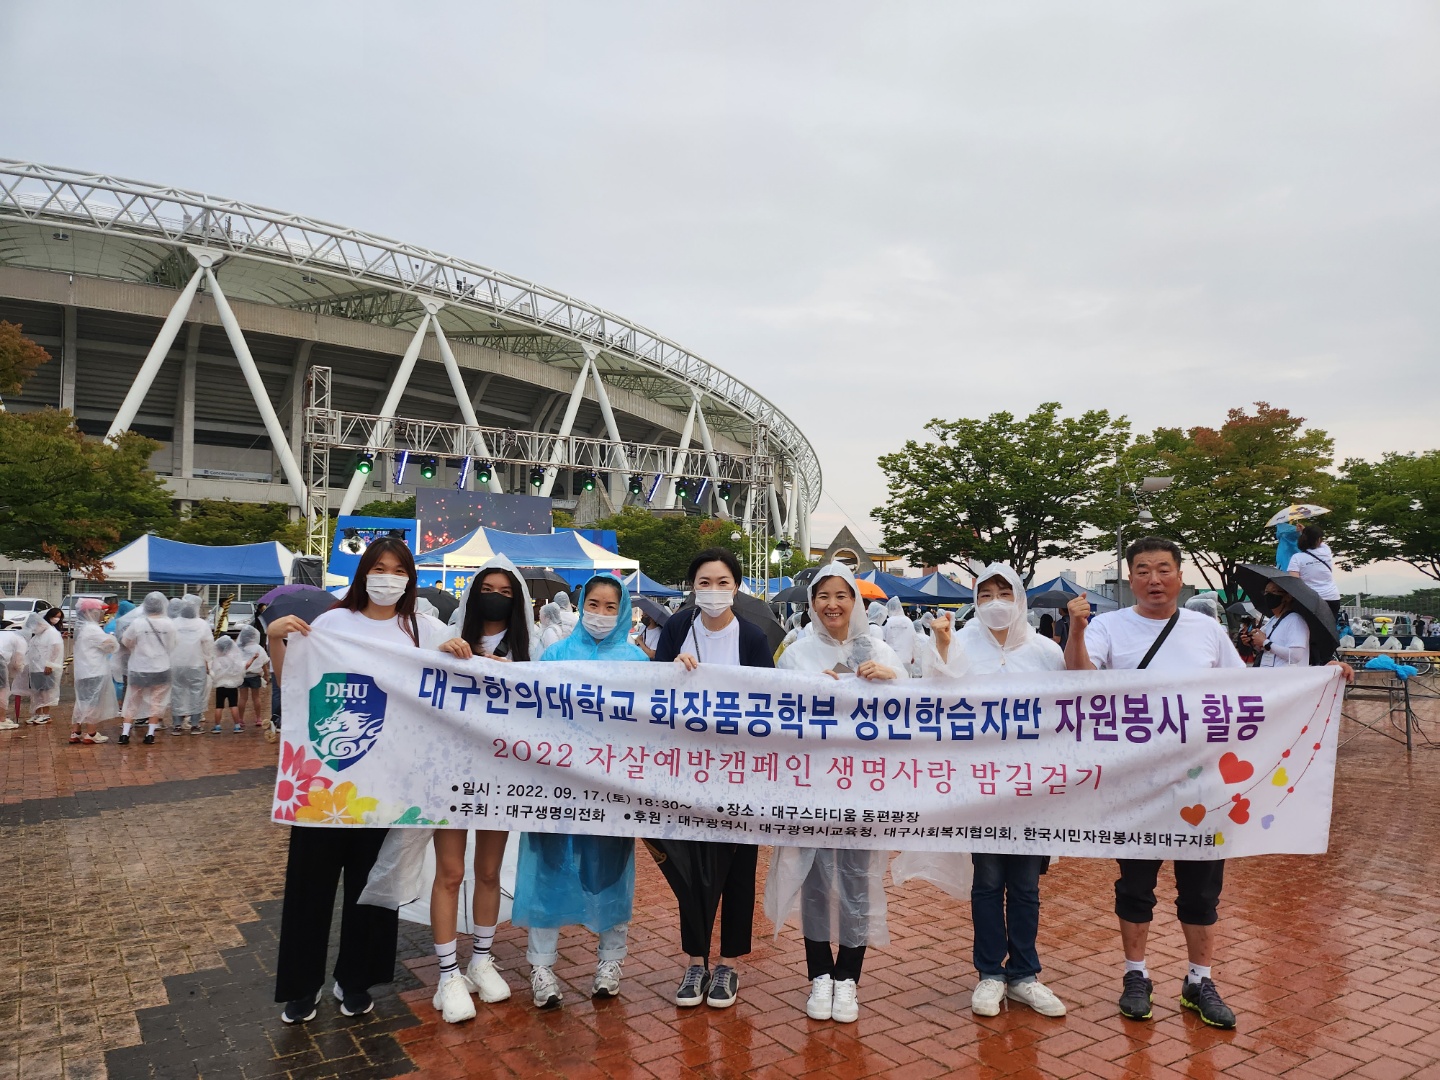 화장품공학부 성인학습자 자원봉사 활동 - 2022 자살예방캠페인 생명사랑 밤길걷기